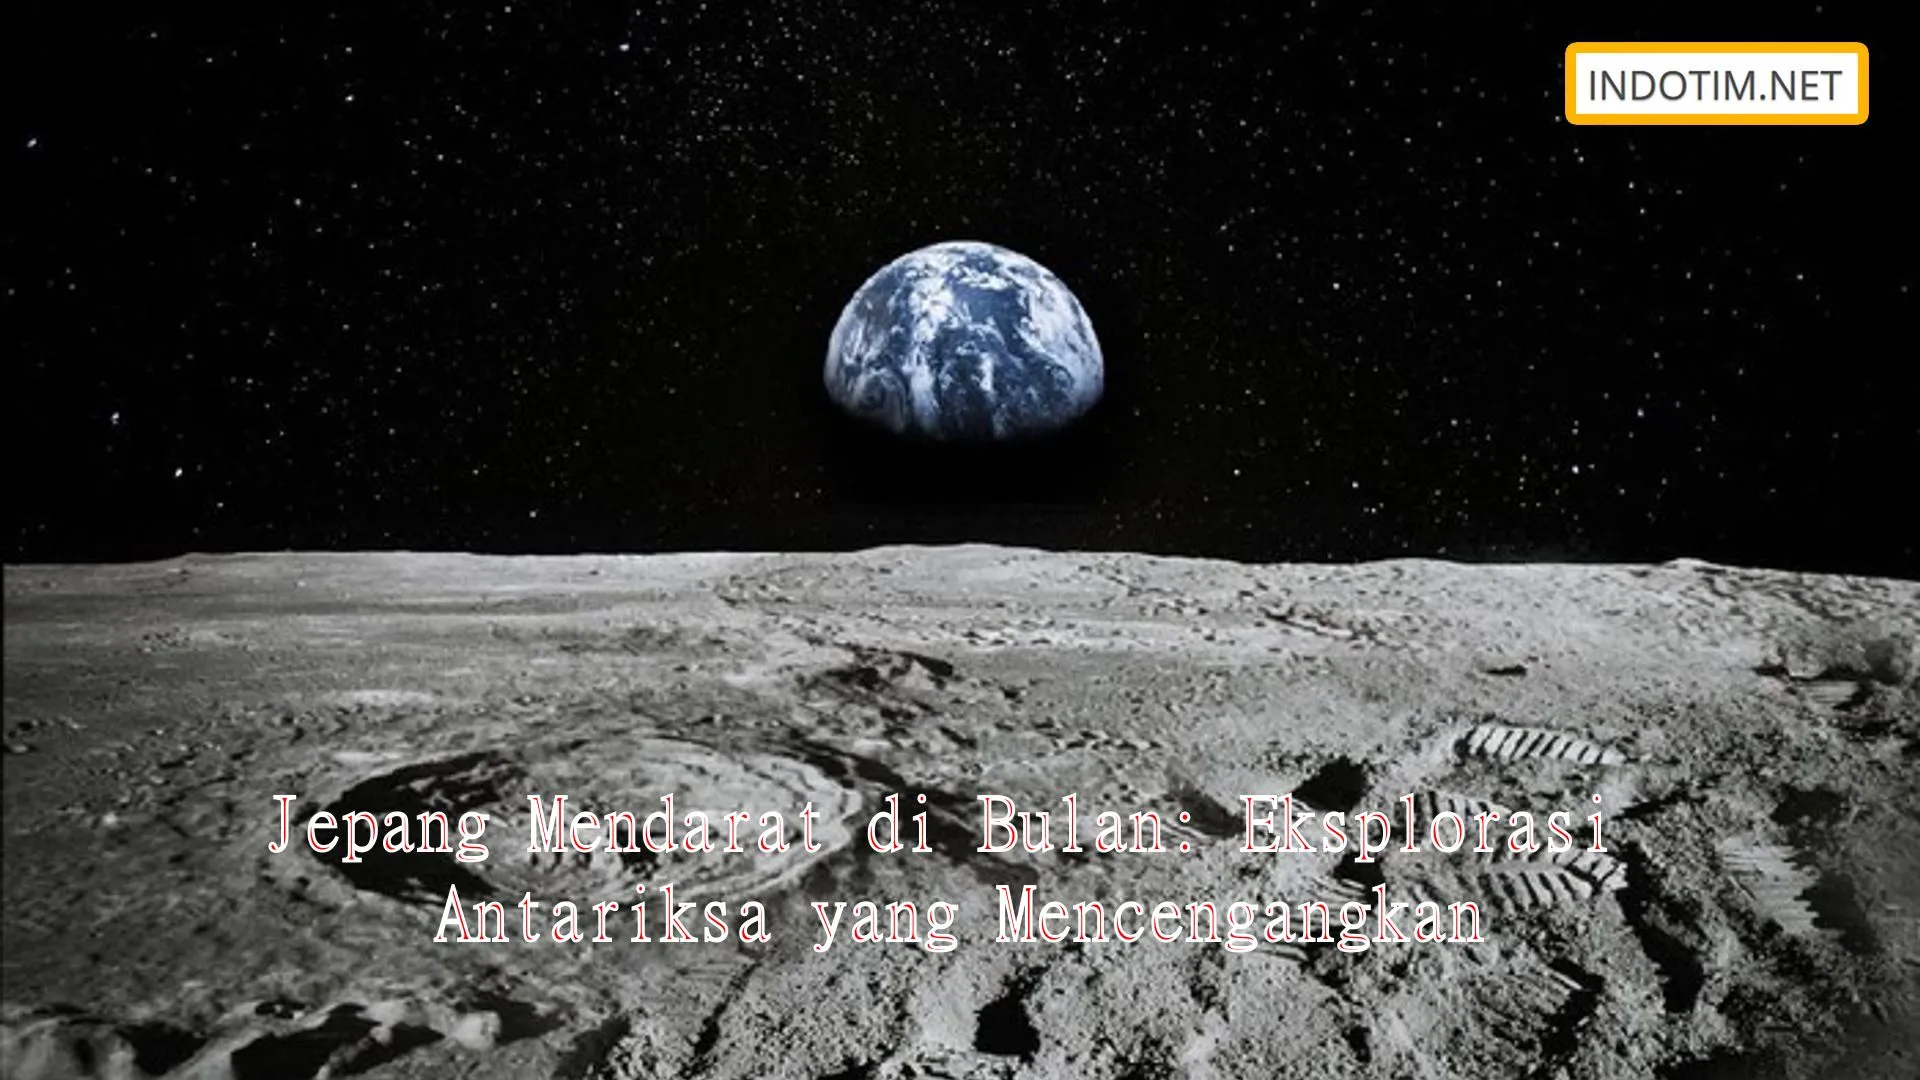 Jepang Mendarat di Bulan: Eksplorasi Antariksa yang Mencengangkan